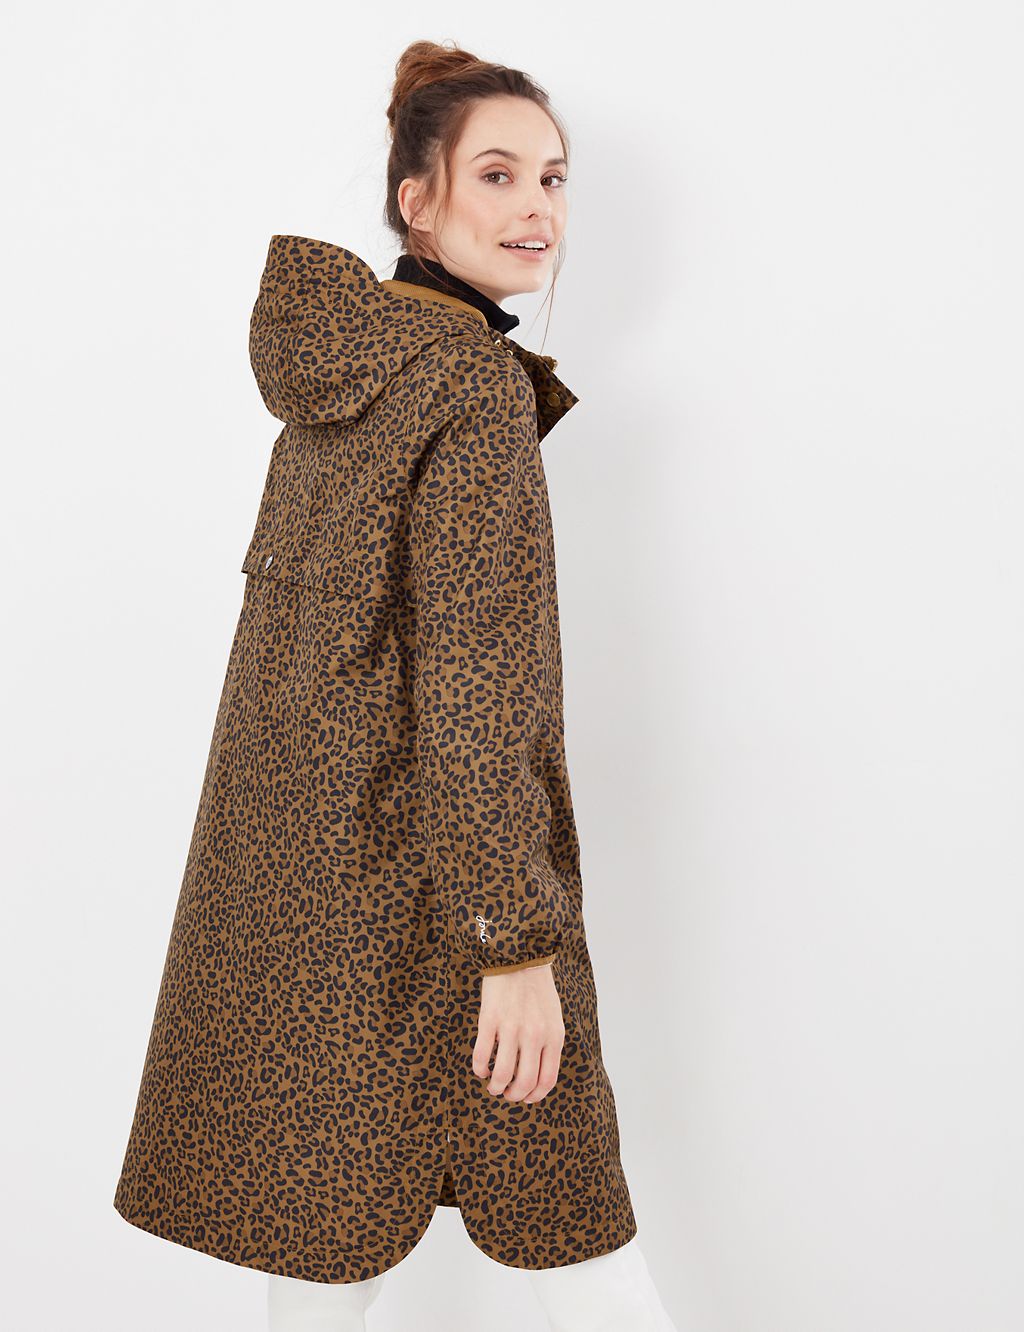 Waterproof Leopard print Longline Raincoat 7 of 7